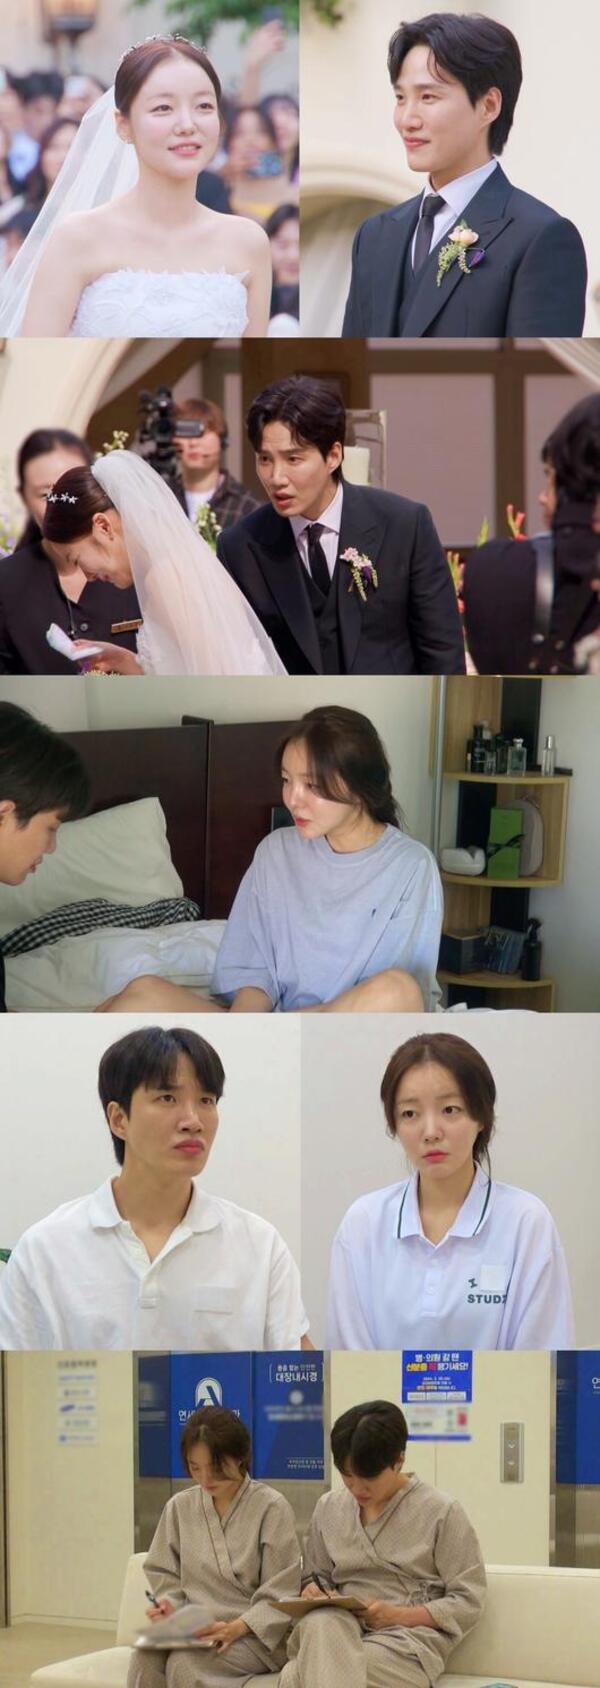 김기리-문지인, 결혼식 비화 공개! 눈물과 웃음이 뒤섞인 초호화 결혼 에피소드